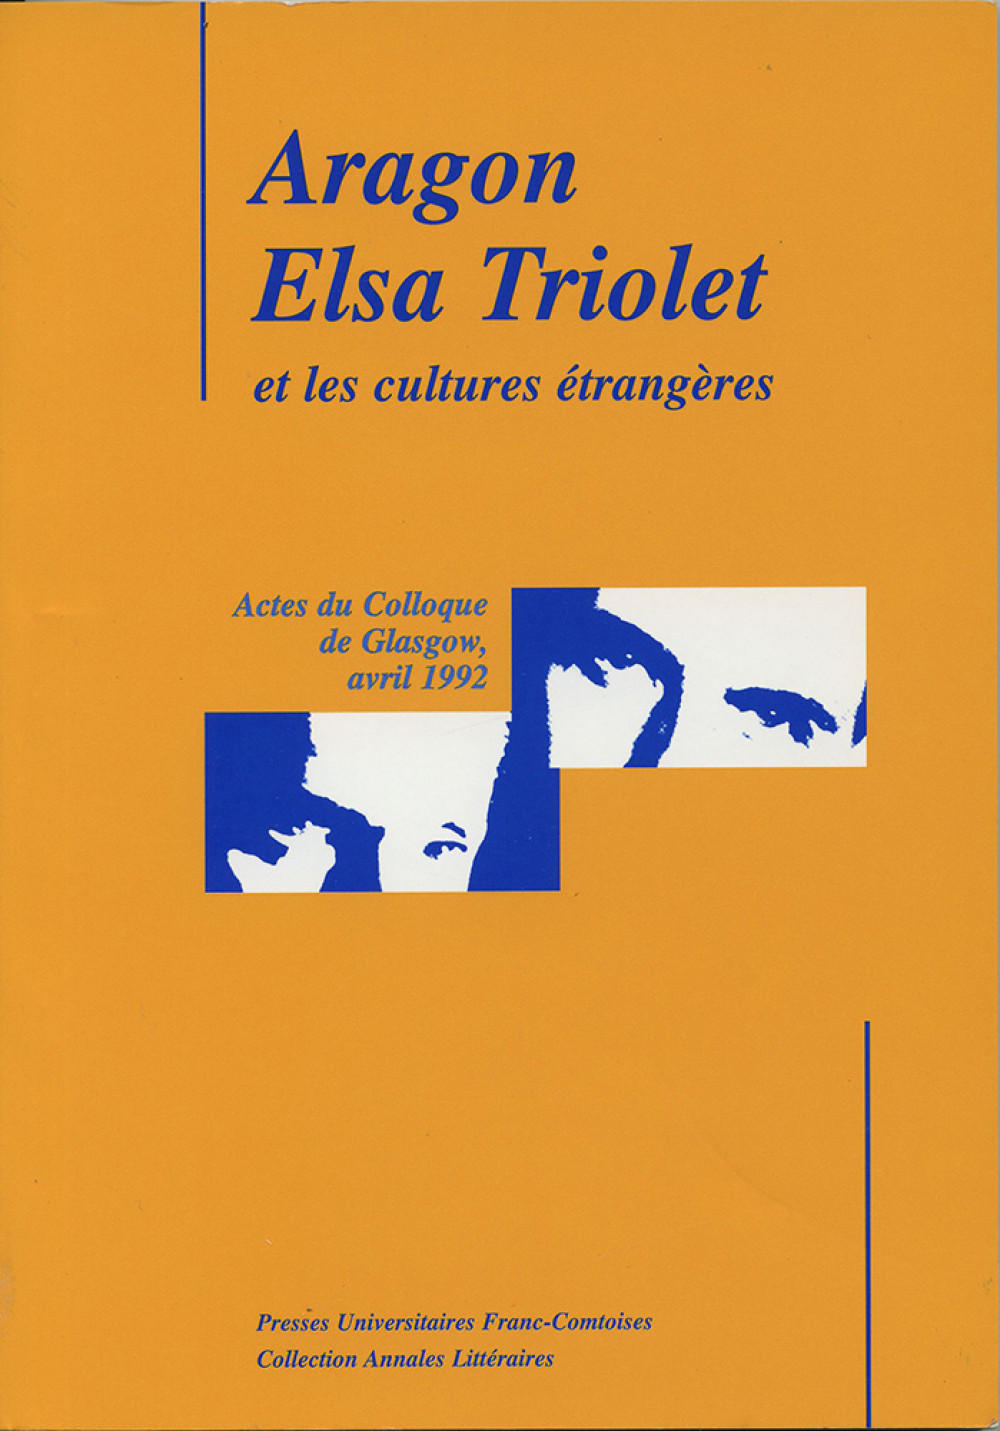 Aragon, Elsa Triolet et les cultures étrangères